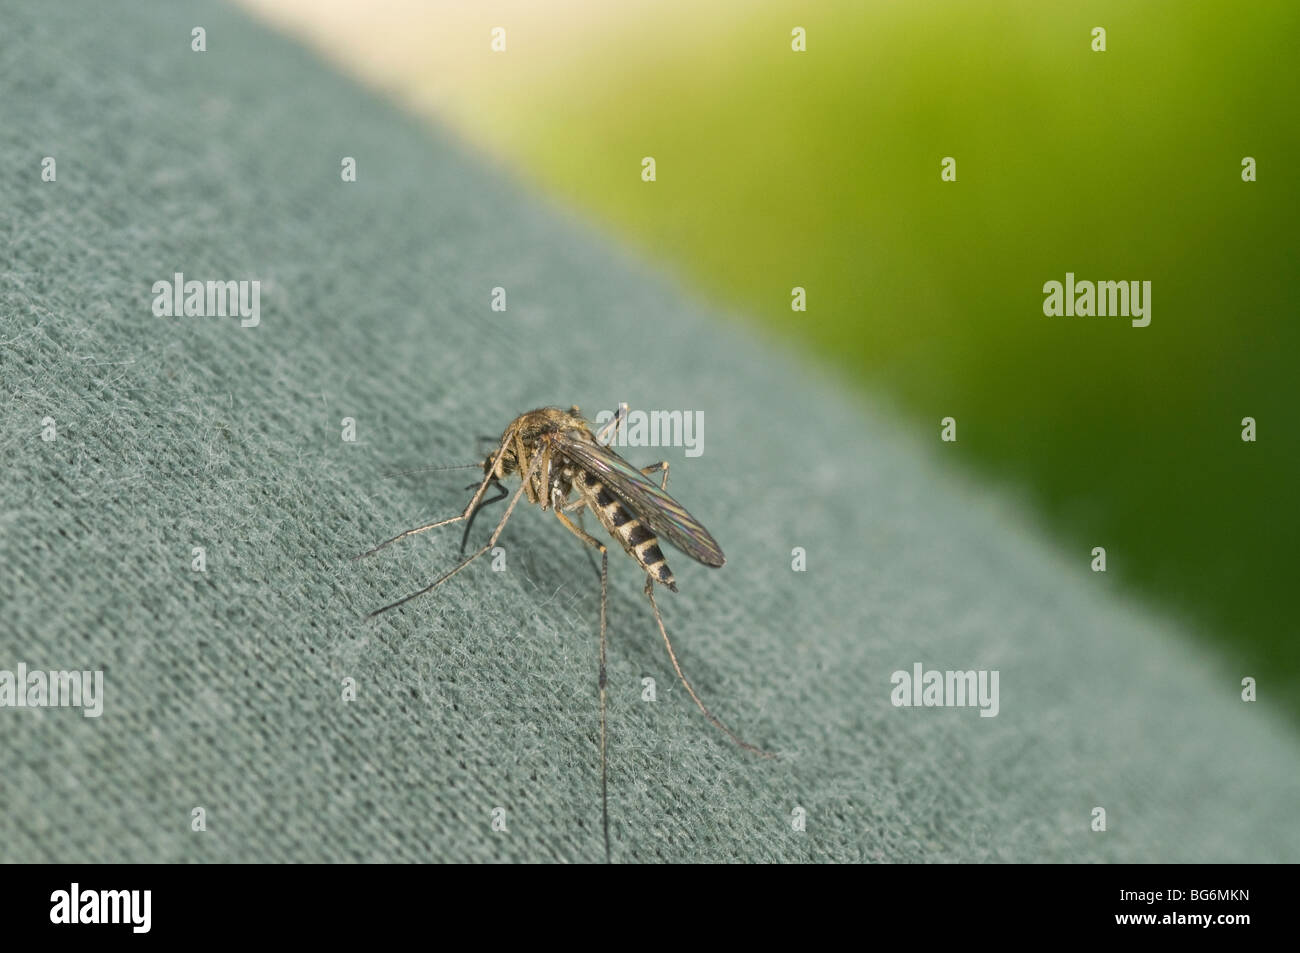 Italia, Piamonte, Oulx (a), un mosquito Foto de stock